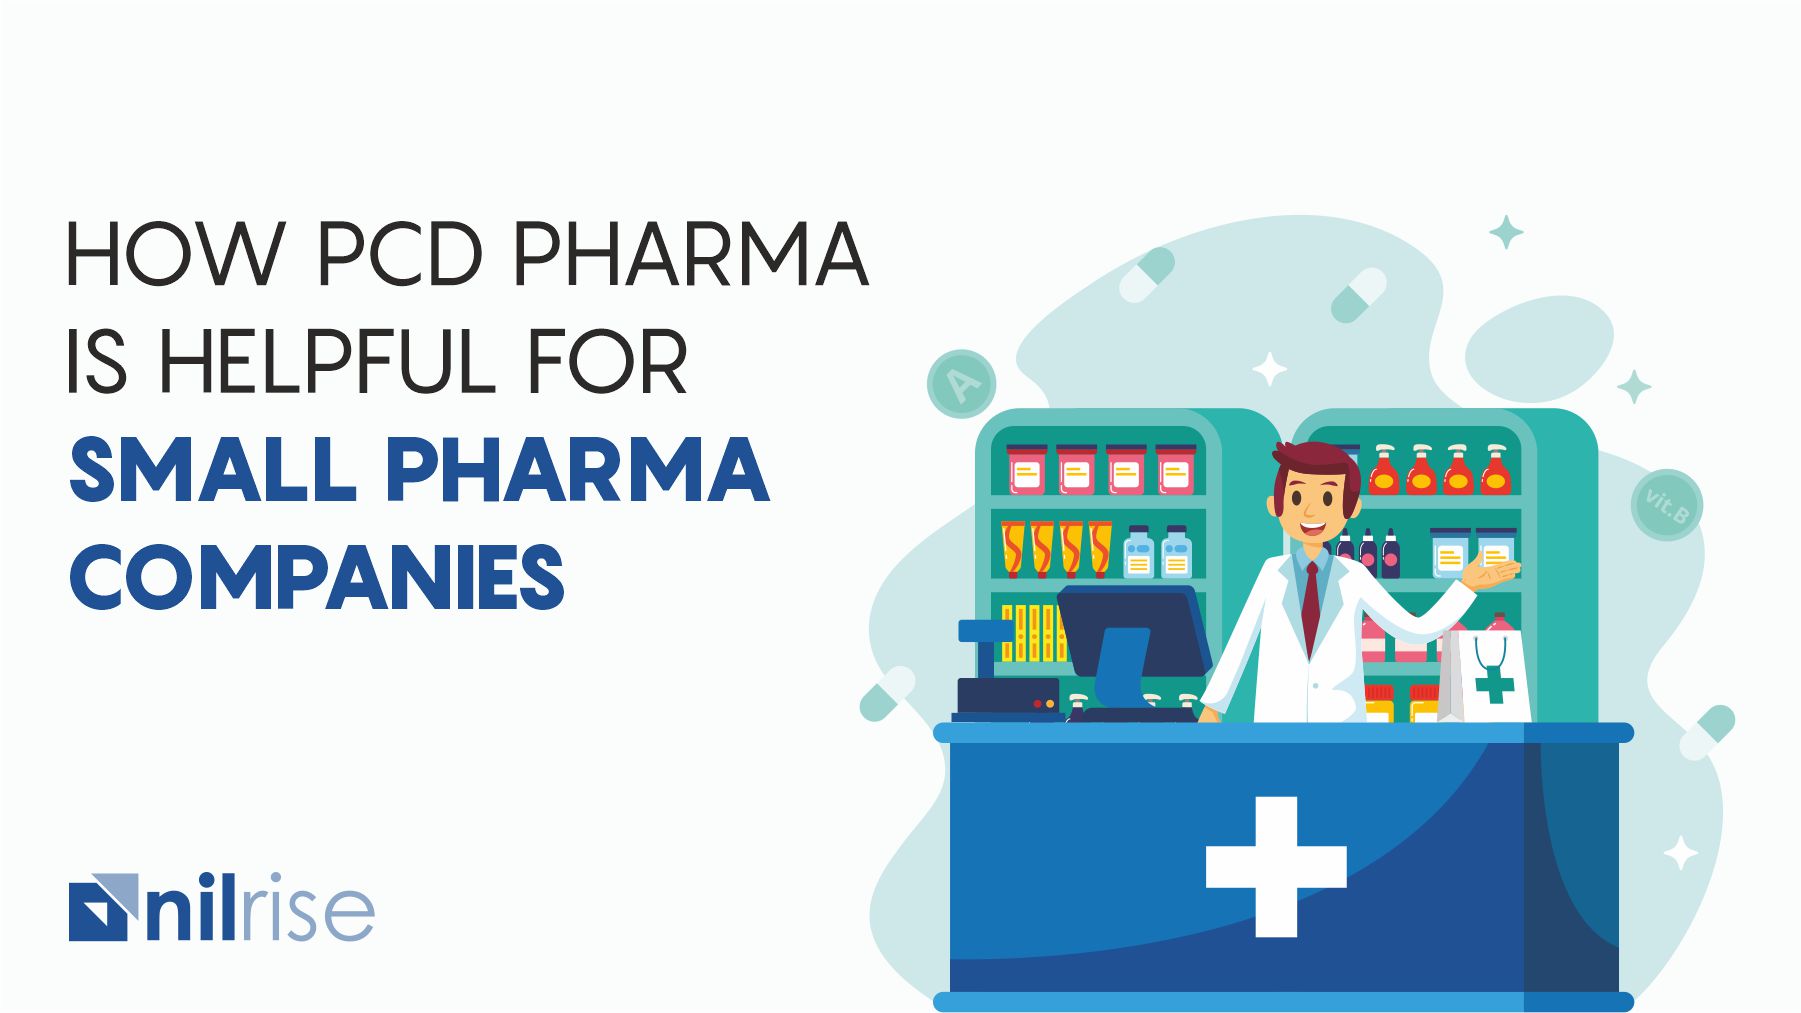 How PCD pharma is helpful for small pharma companies?